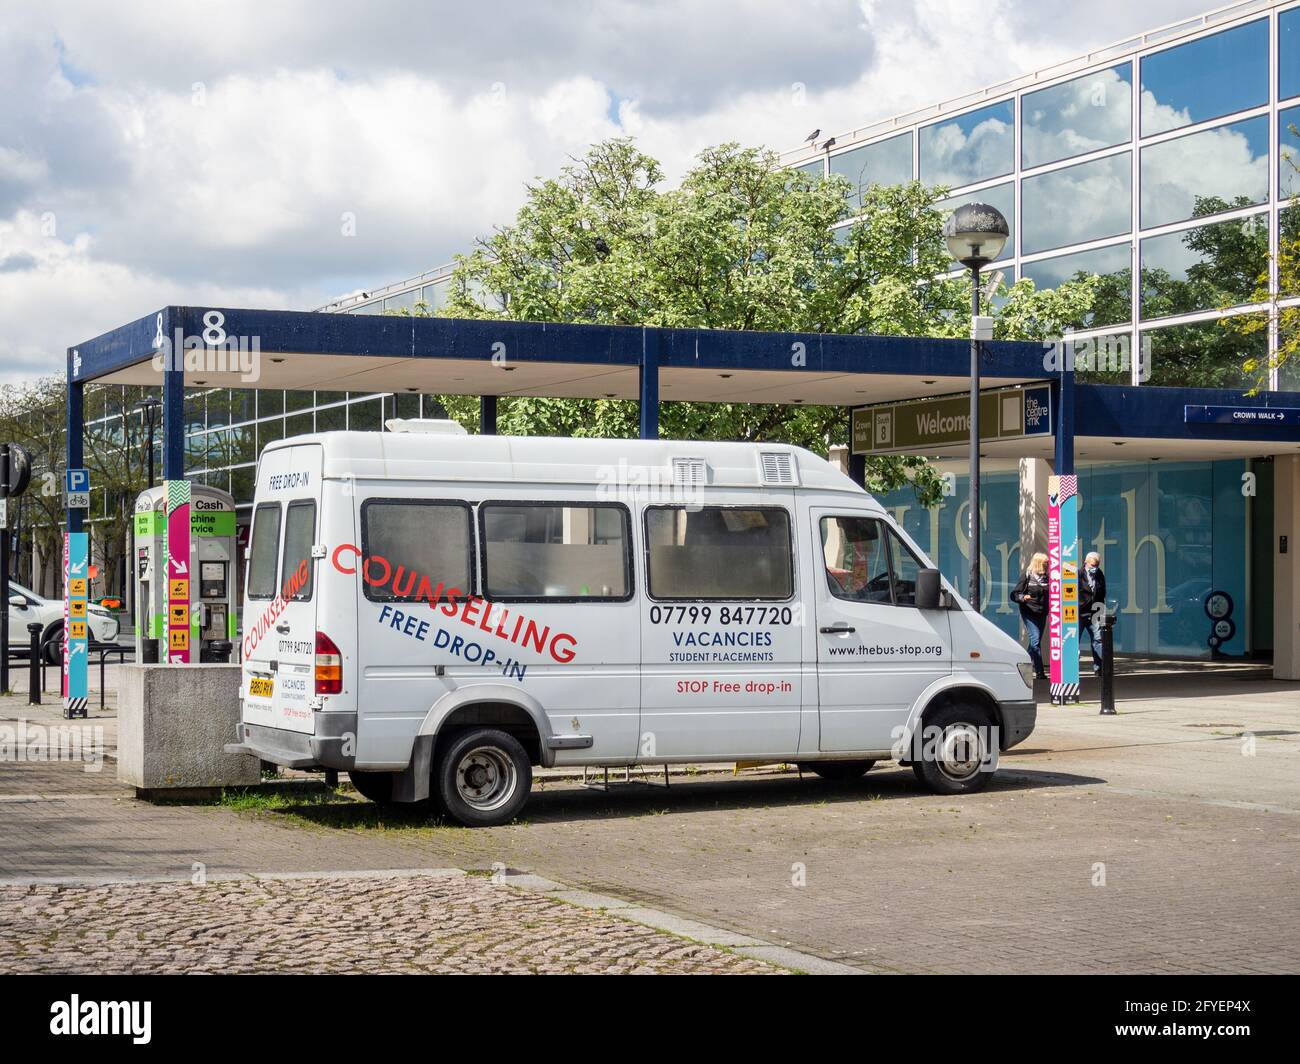 New Start, service de dépôt et de conseil, géré à partir d'un minibus, Central Milton Keynes, Royaume-Uni Banque D'Images